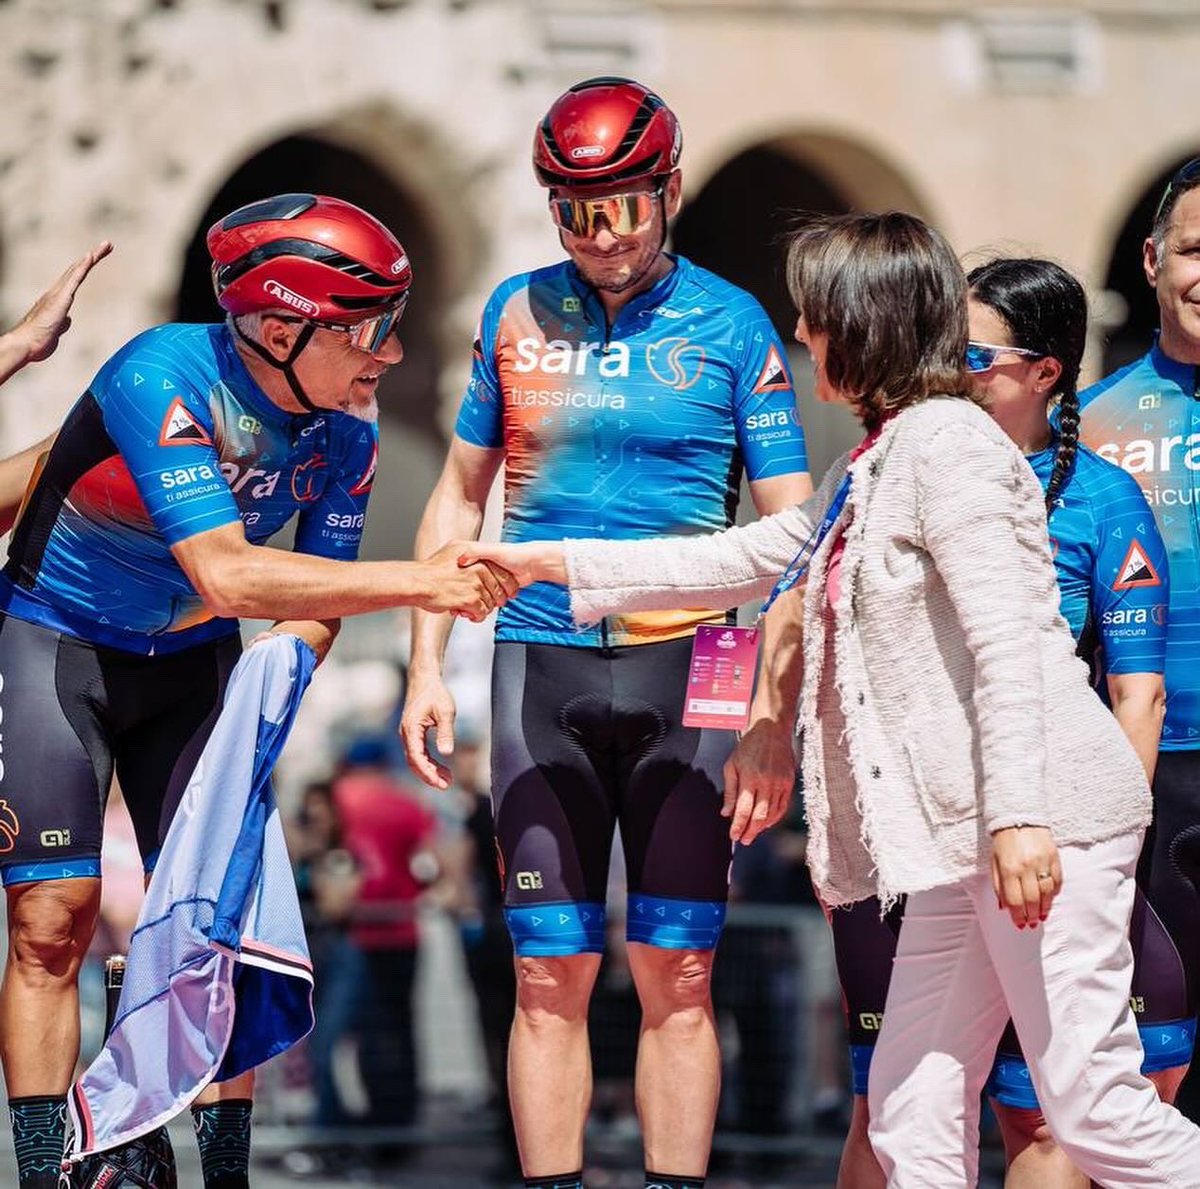 🚴‍♂️ Otro #Giro junto a la #MagliaRosa compartiendo la formidable energía de ciclistas y aficionados. Felicitaciones a @TamauPogi por la victoria, así como al colombiano @danifmartinez96 y a @GeraintThomas86 por alcanzar el 2do y 3er puesto 🏆 @giroditalia @rcssport